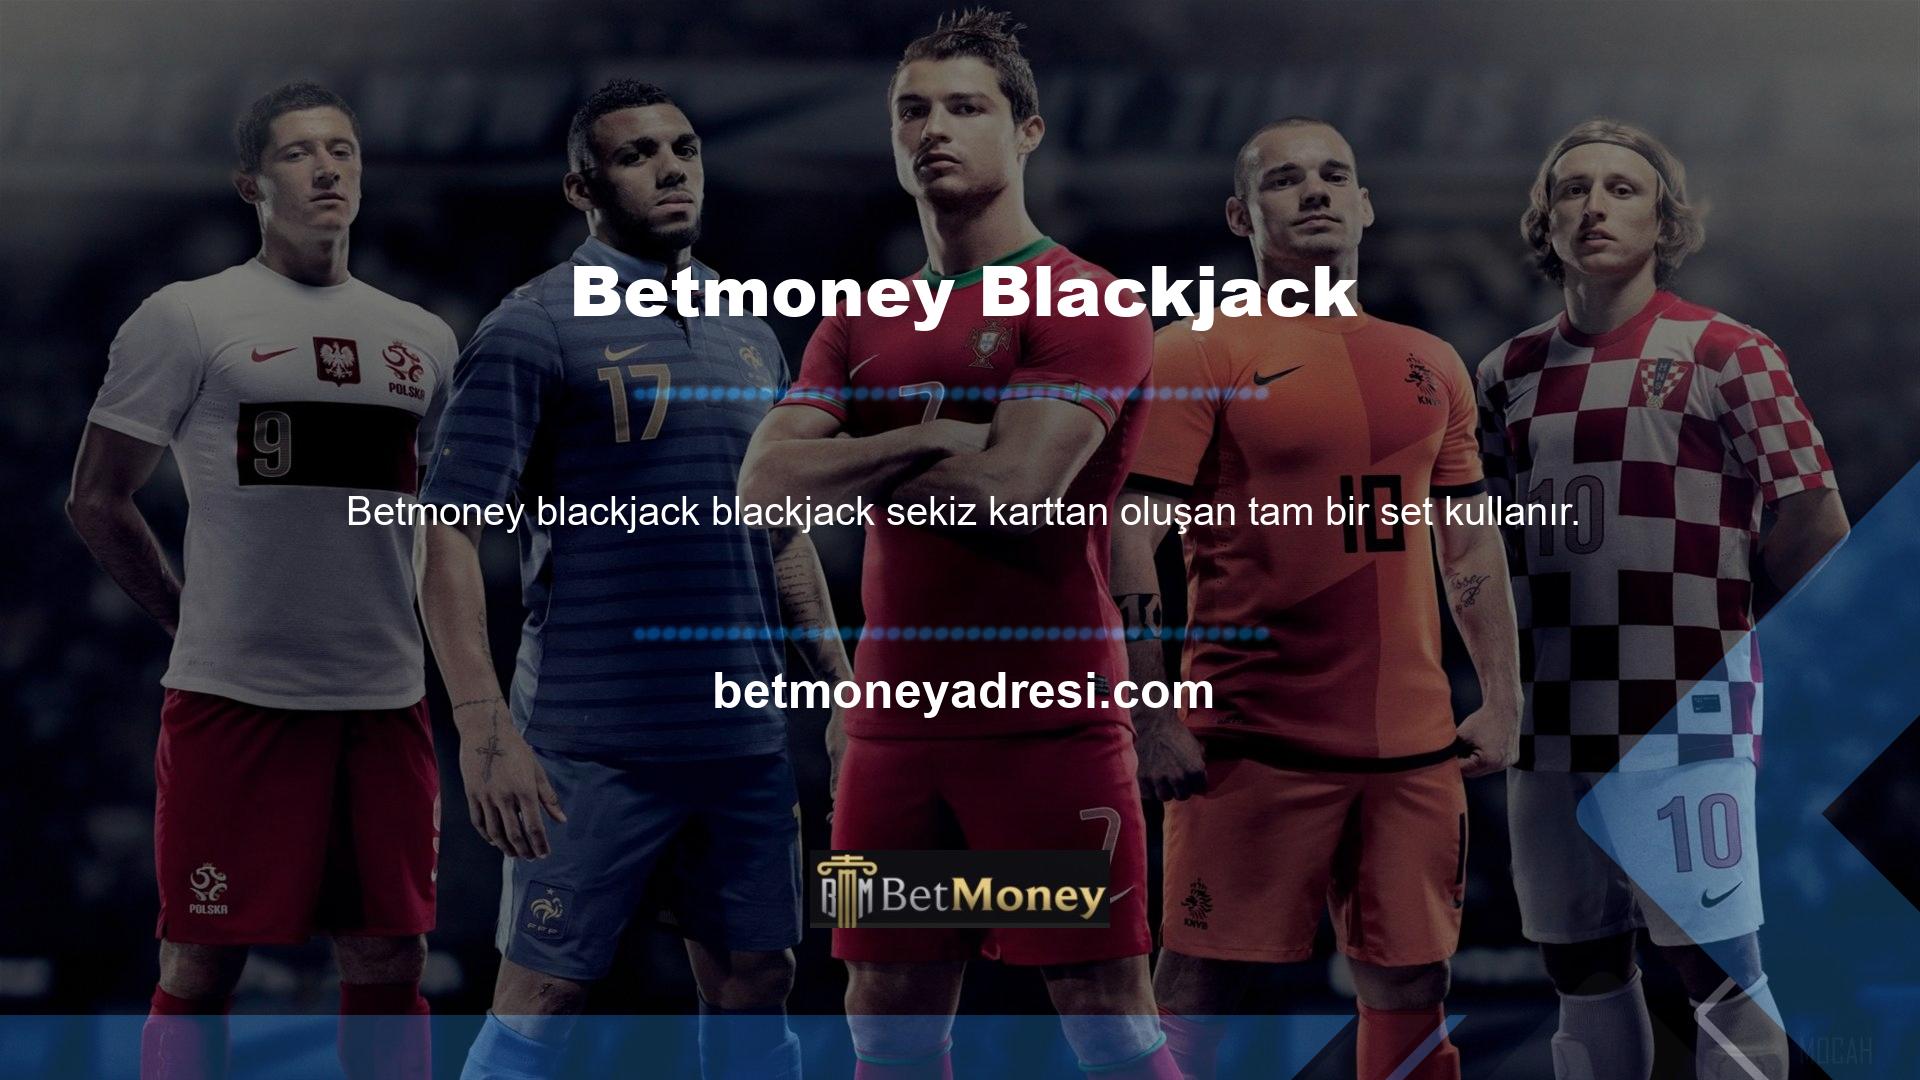 Oyunun bu versiyonunda Betmoney Blackjack'i diğer blackjack oyunlarından farklı kılan şey gecikmeli teslim olma kuralıdır